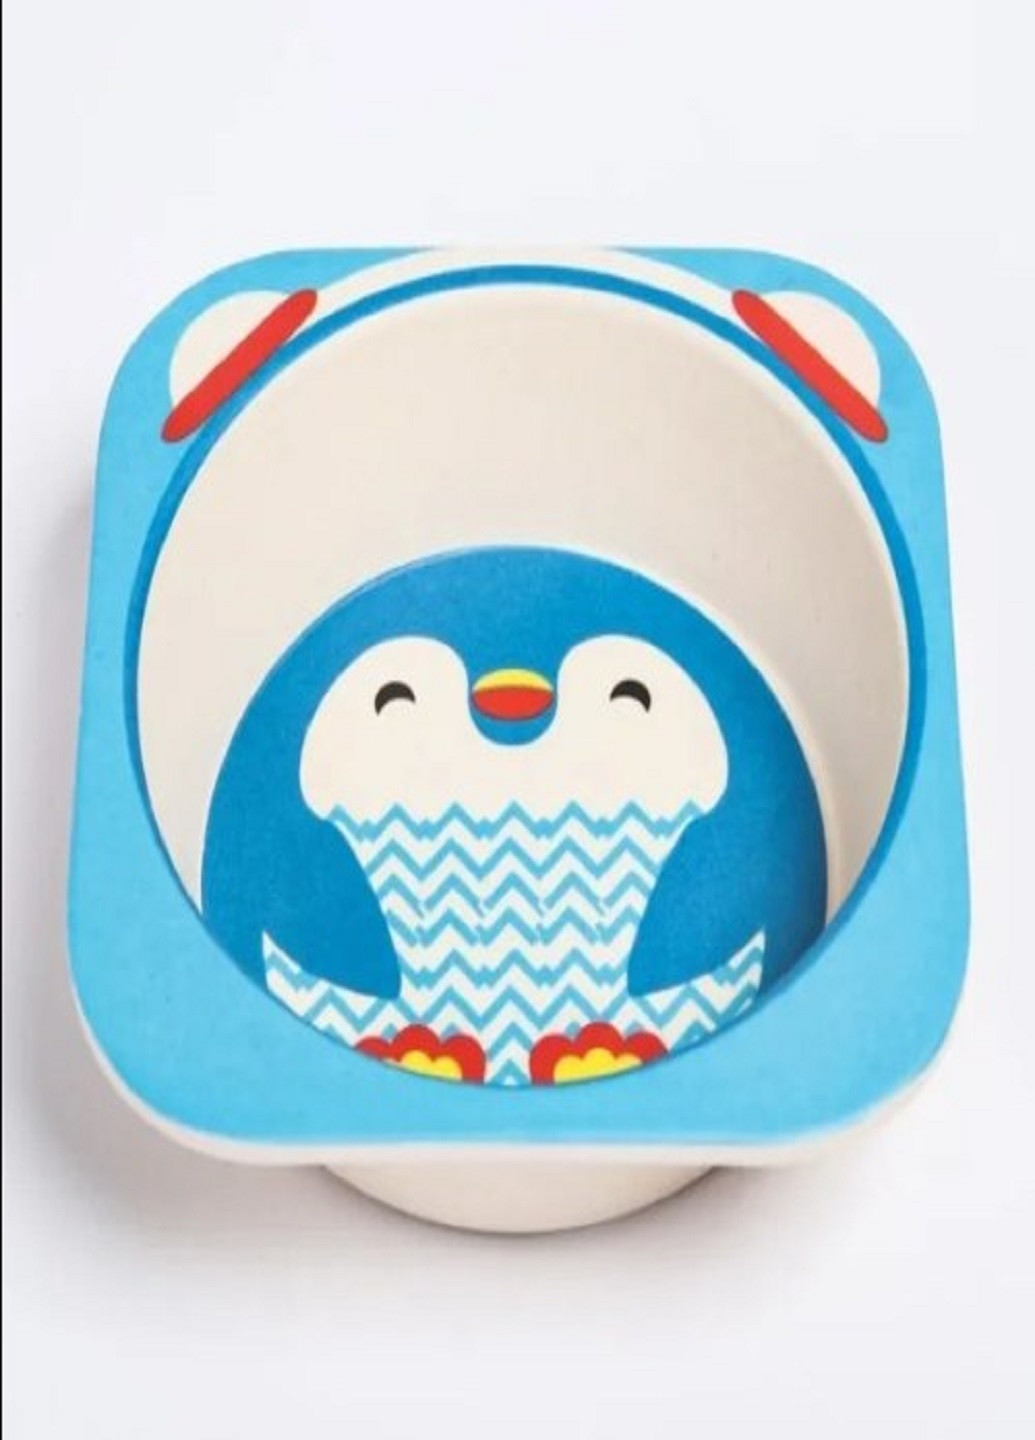 Бамбуковый набор детской посуды ECO friendly product 5 предметов пингвин синий VTech (263360251)